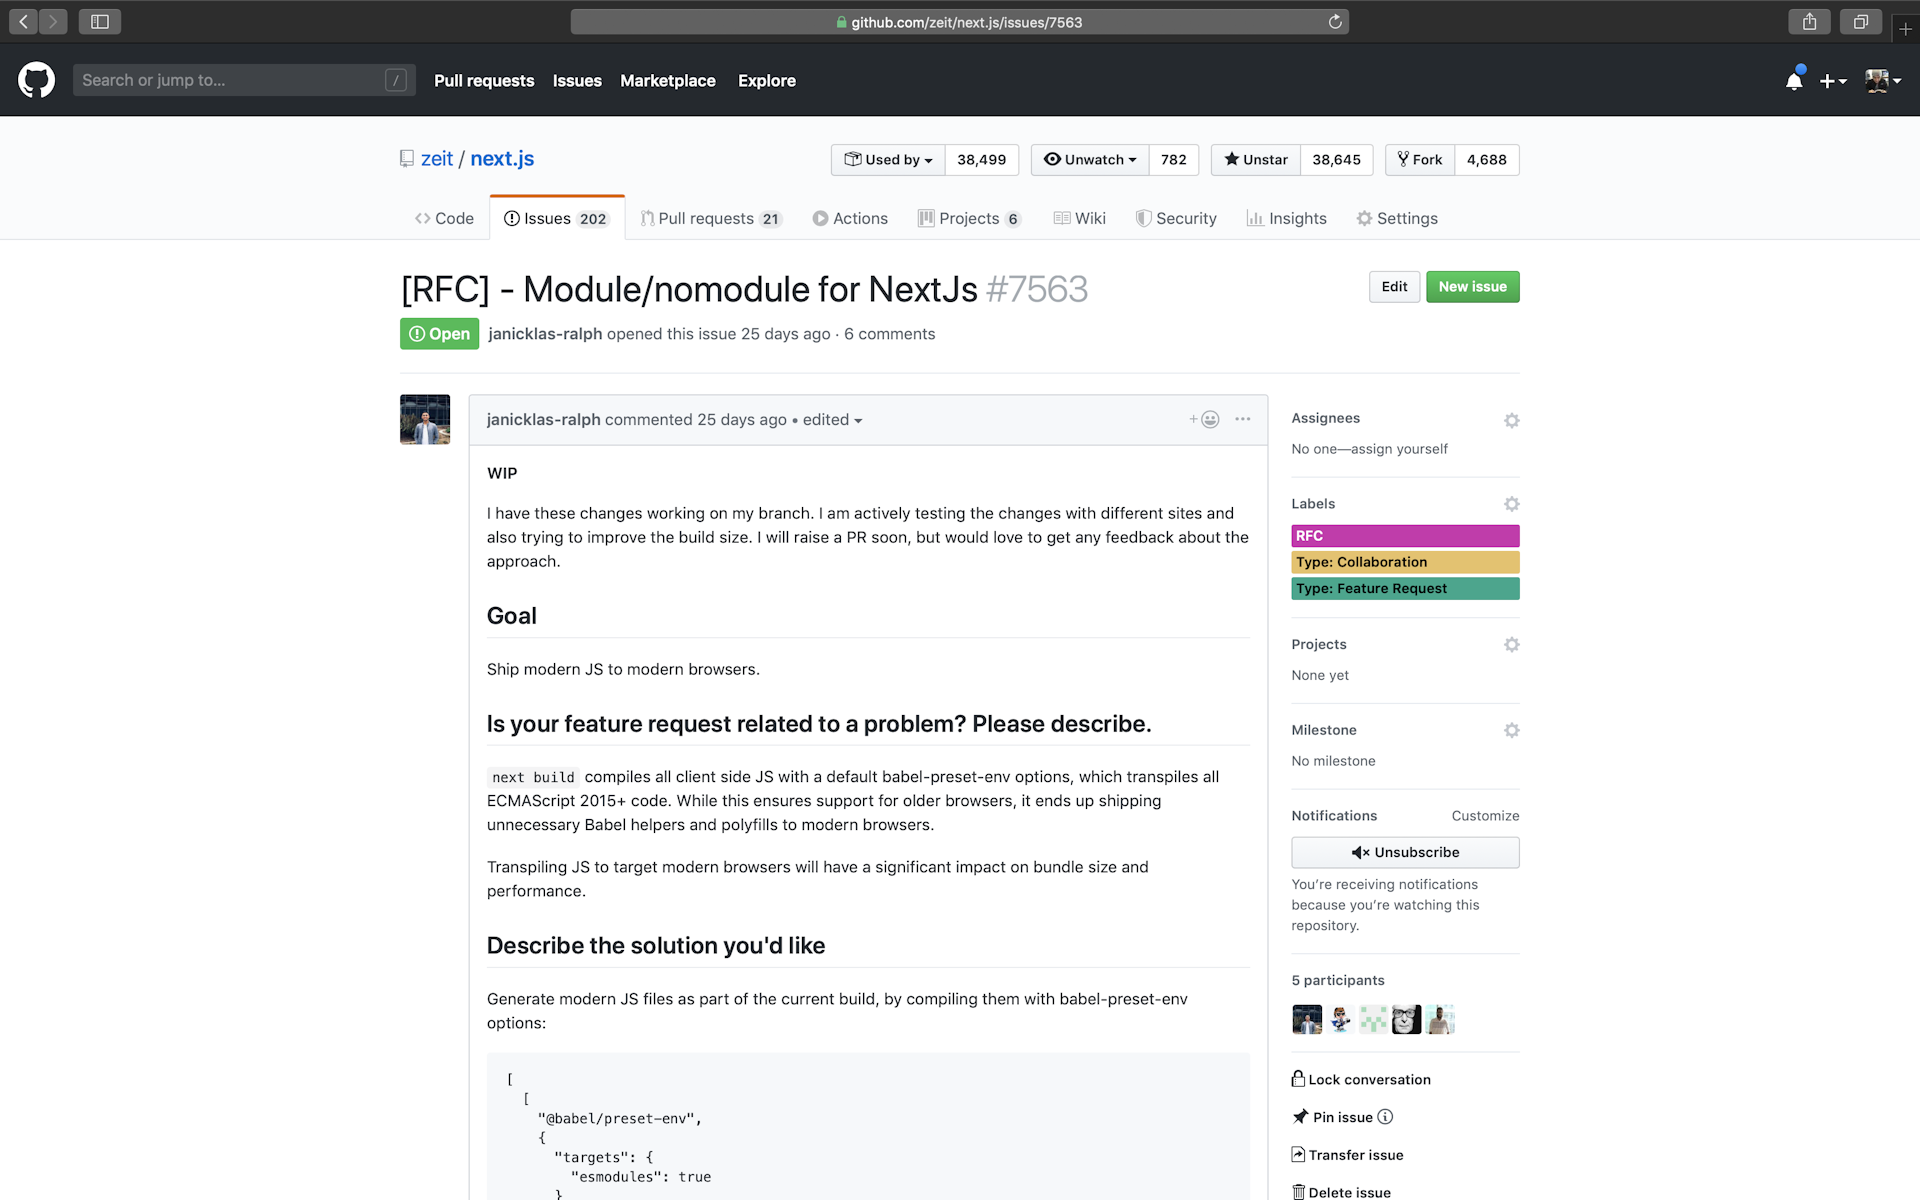 Next.js Module/Nomodule Collaboration RFC